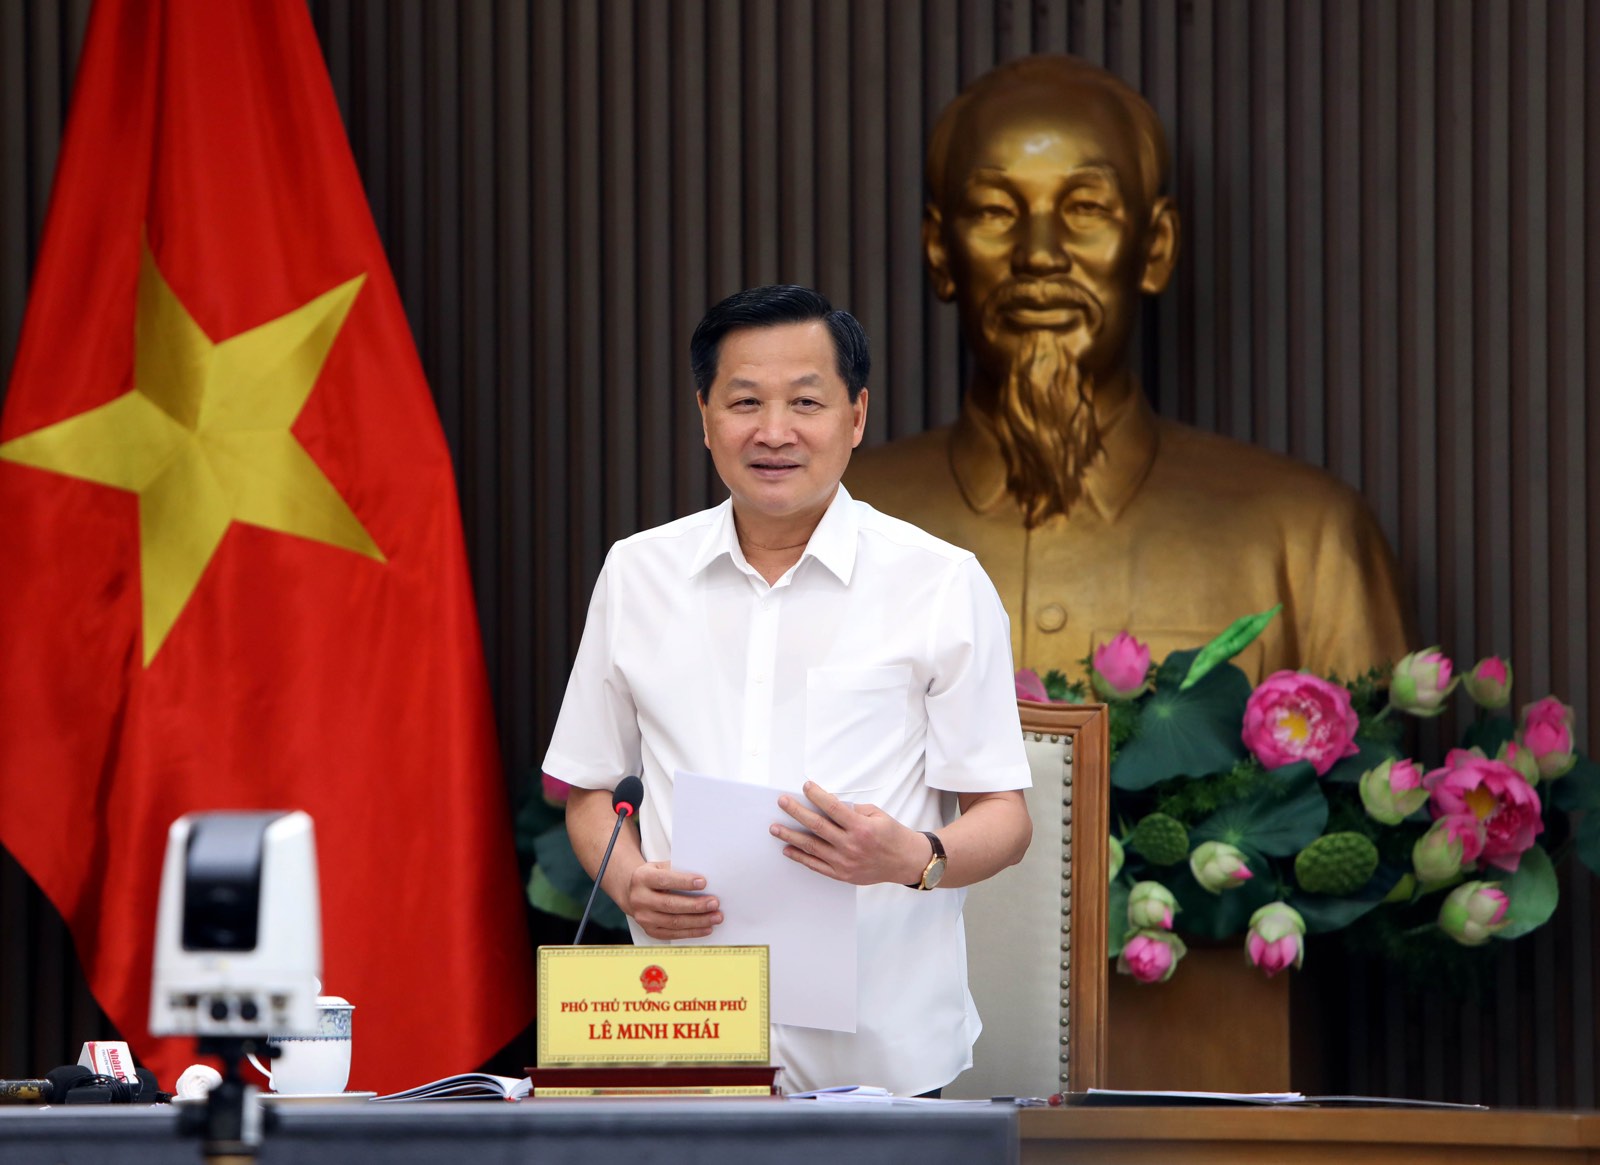 Phó Thủ tướng Lê Minh Khái đồng ý chủ trương bổ sung ngành điện hóa, ủng hộ Vinachem tăng vốn điều lệ - Ảnh: VGP